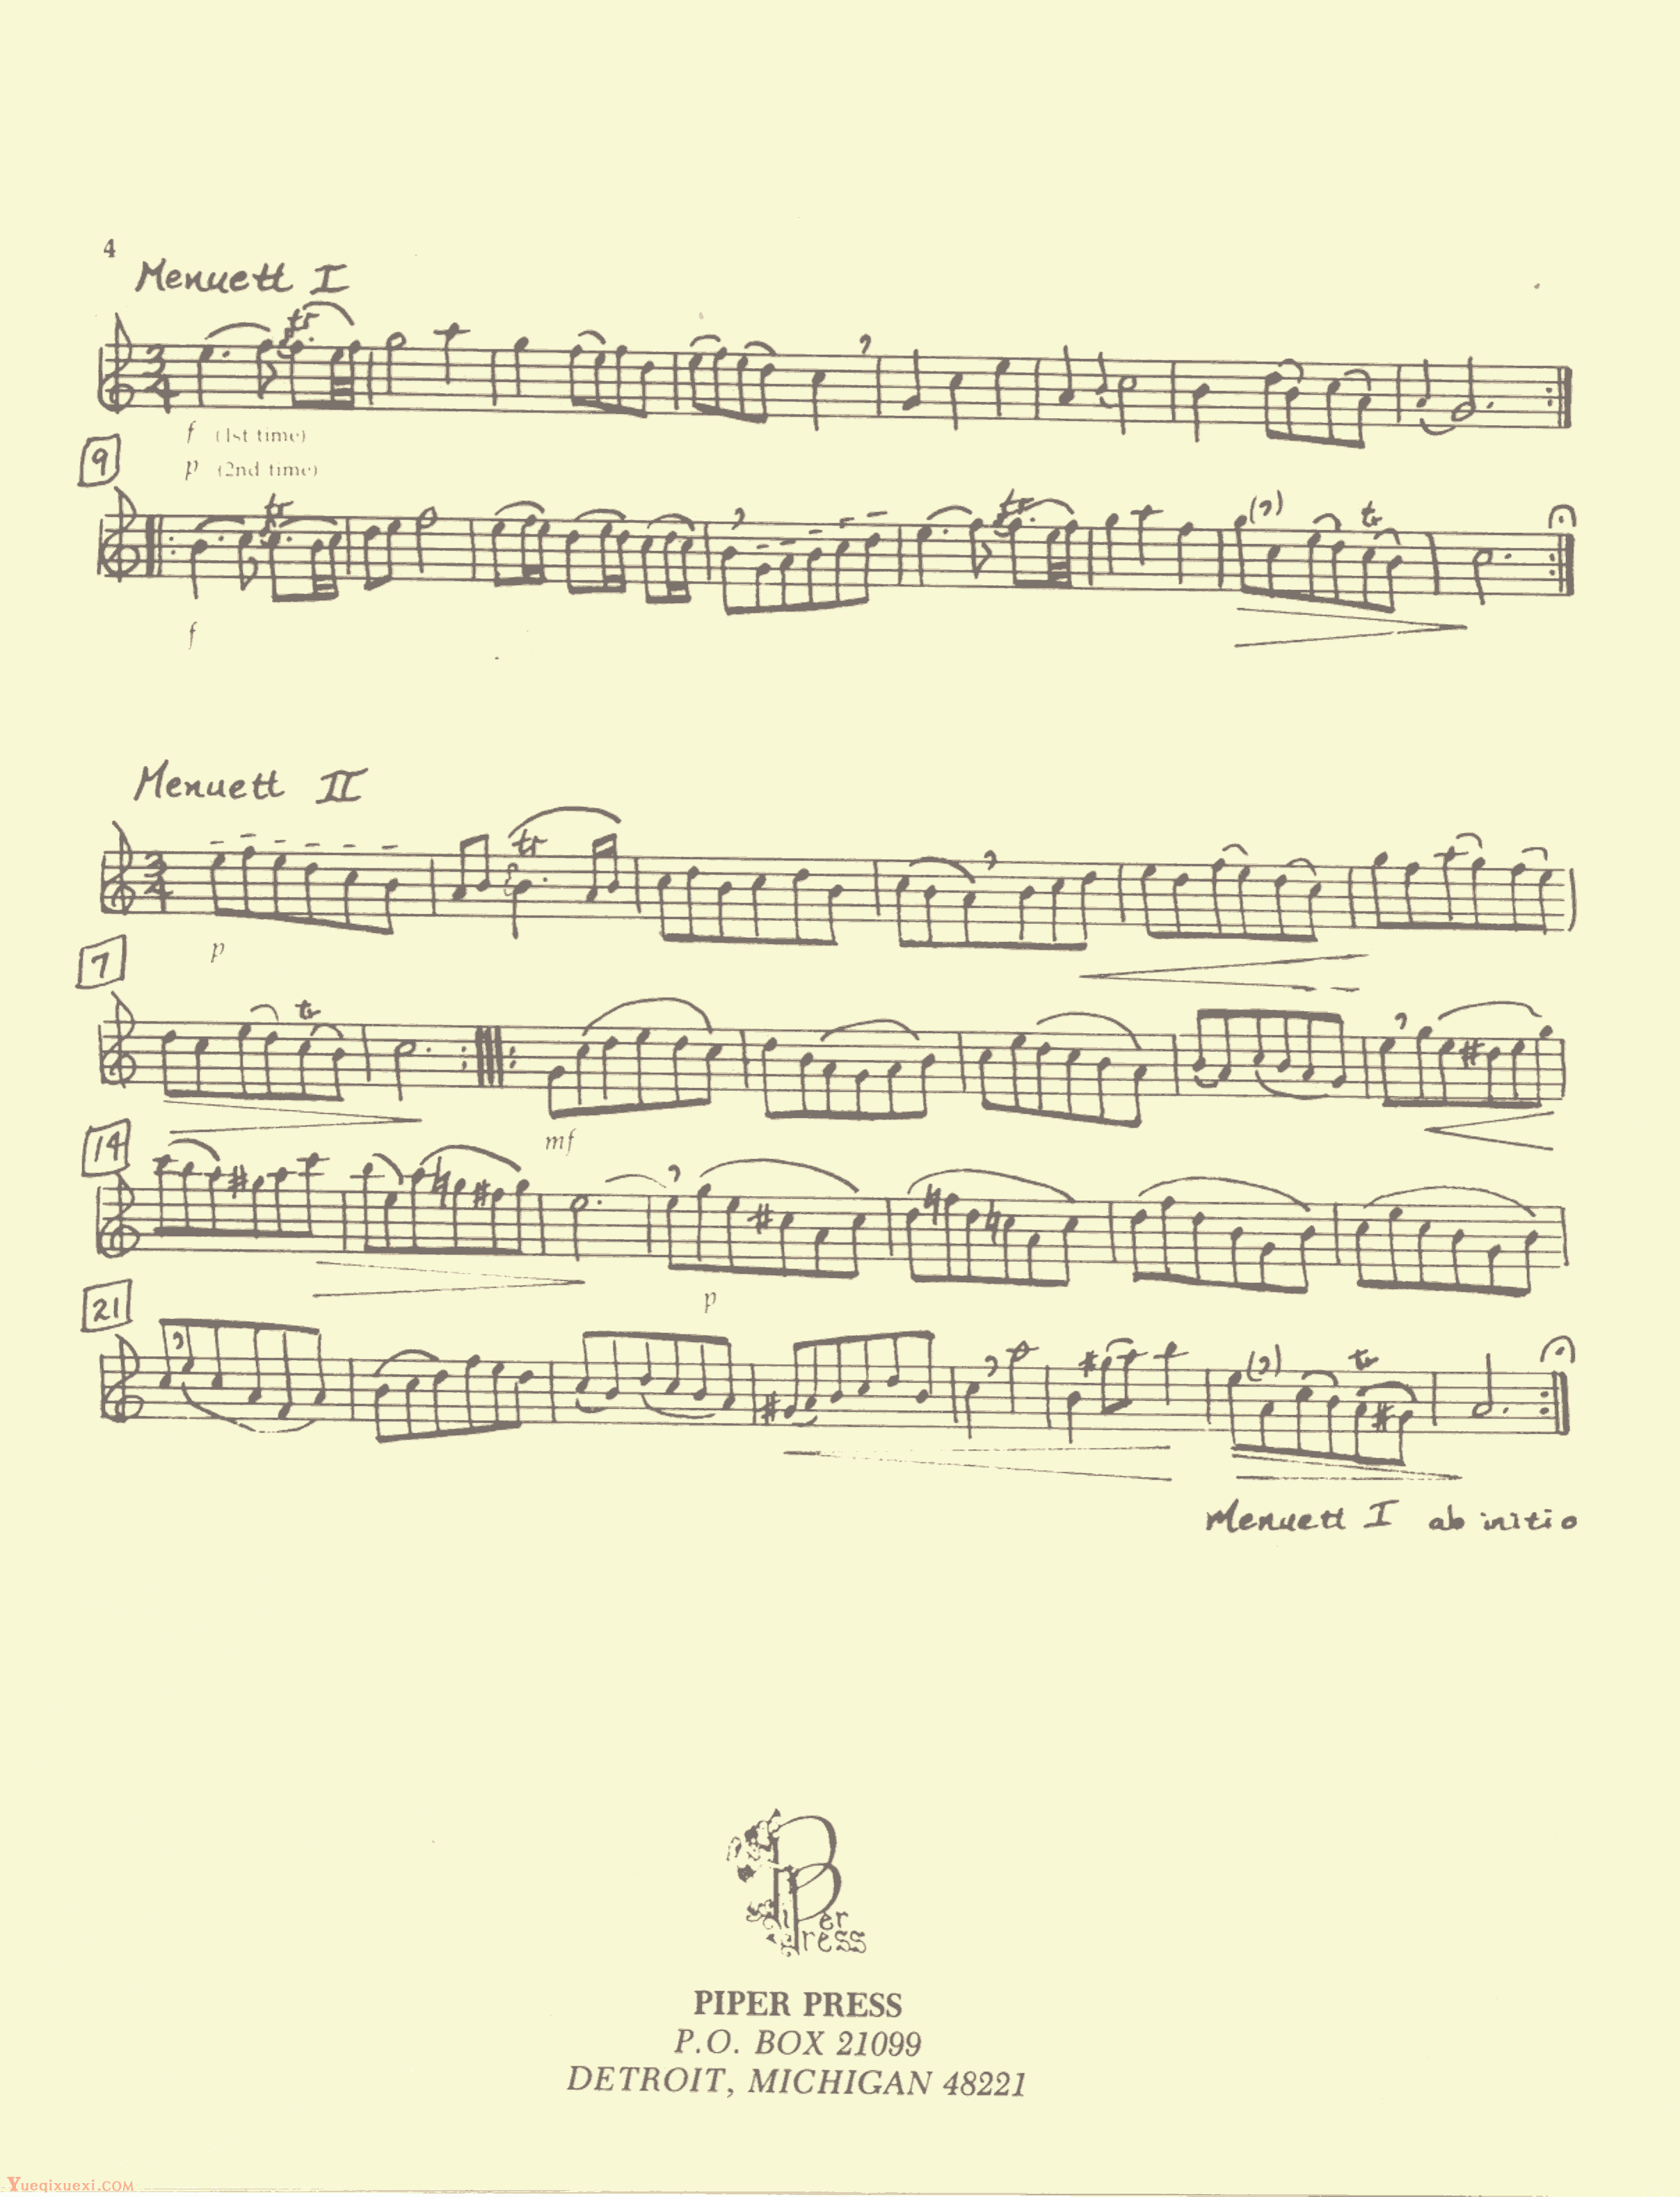 Flute Sonata in C (Bach) 